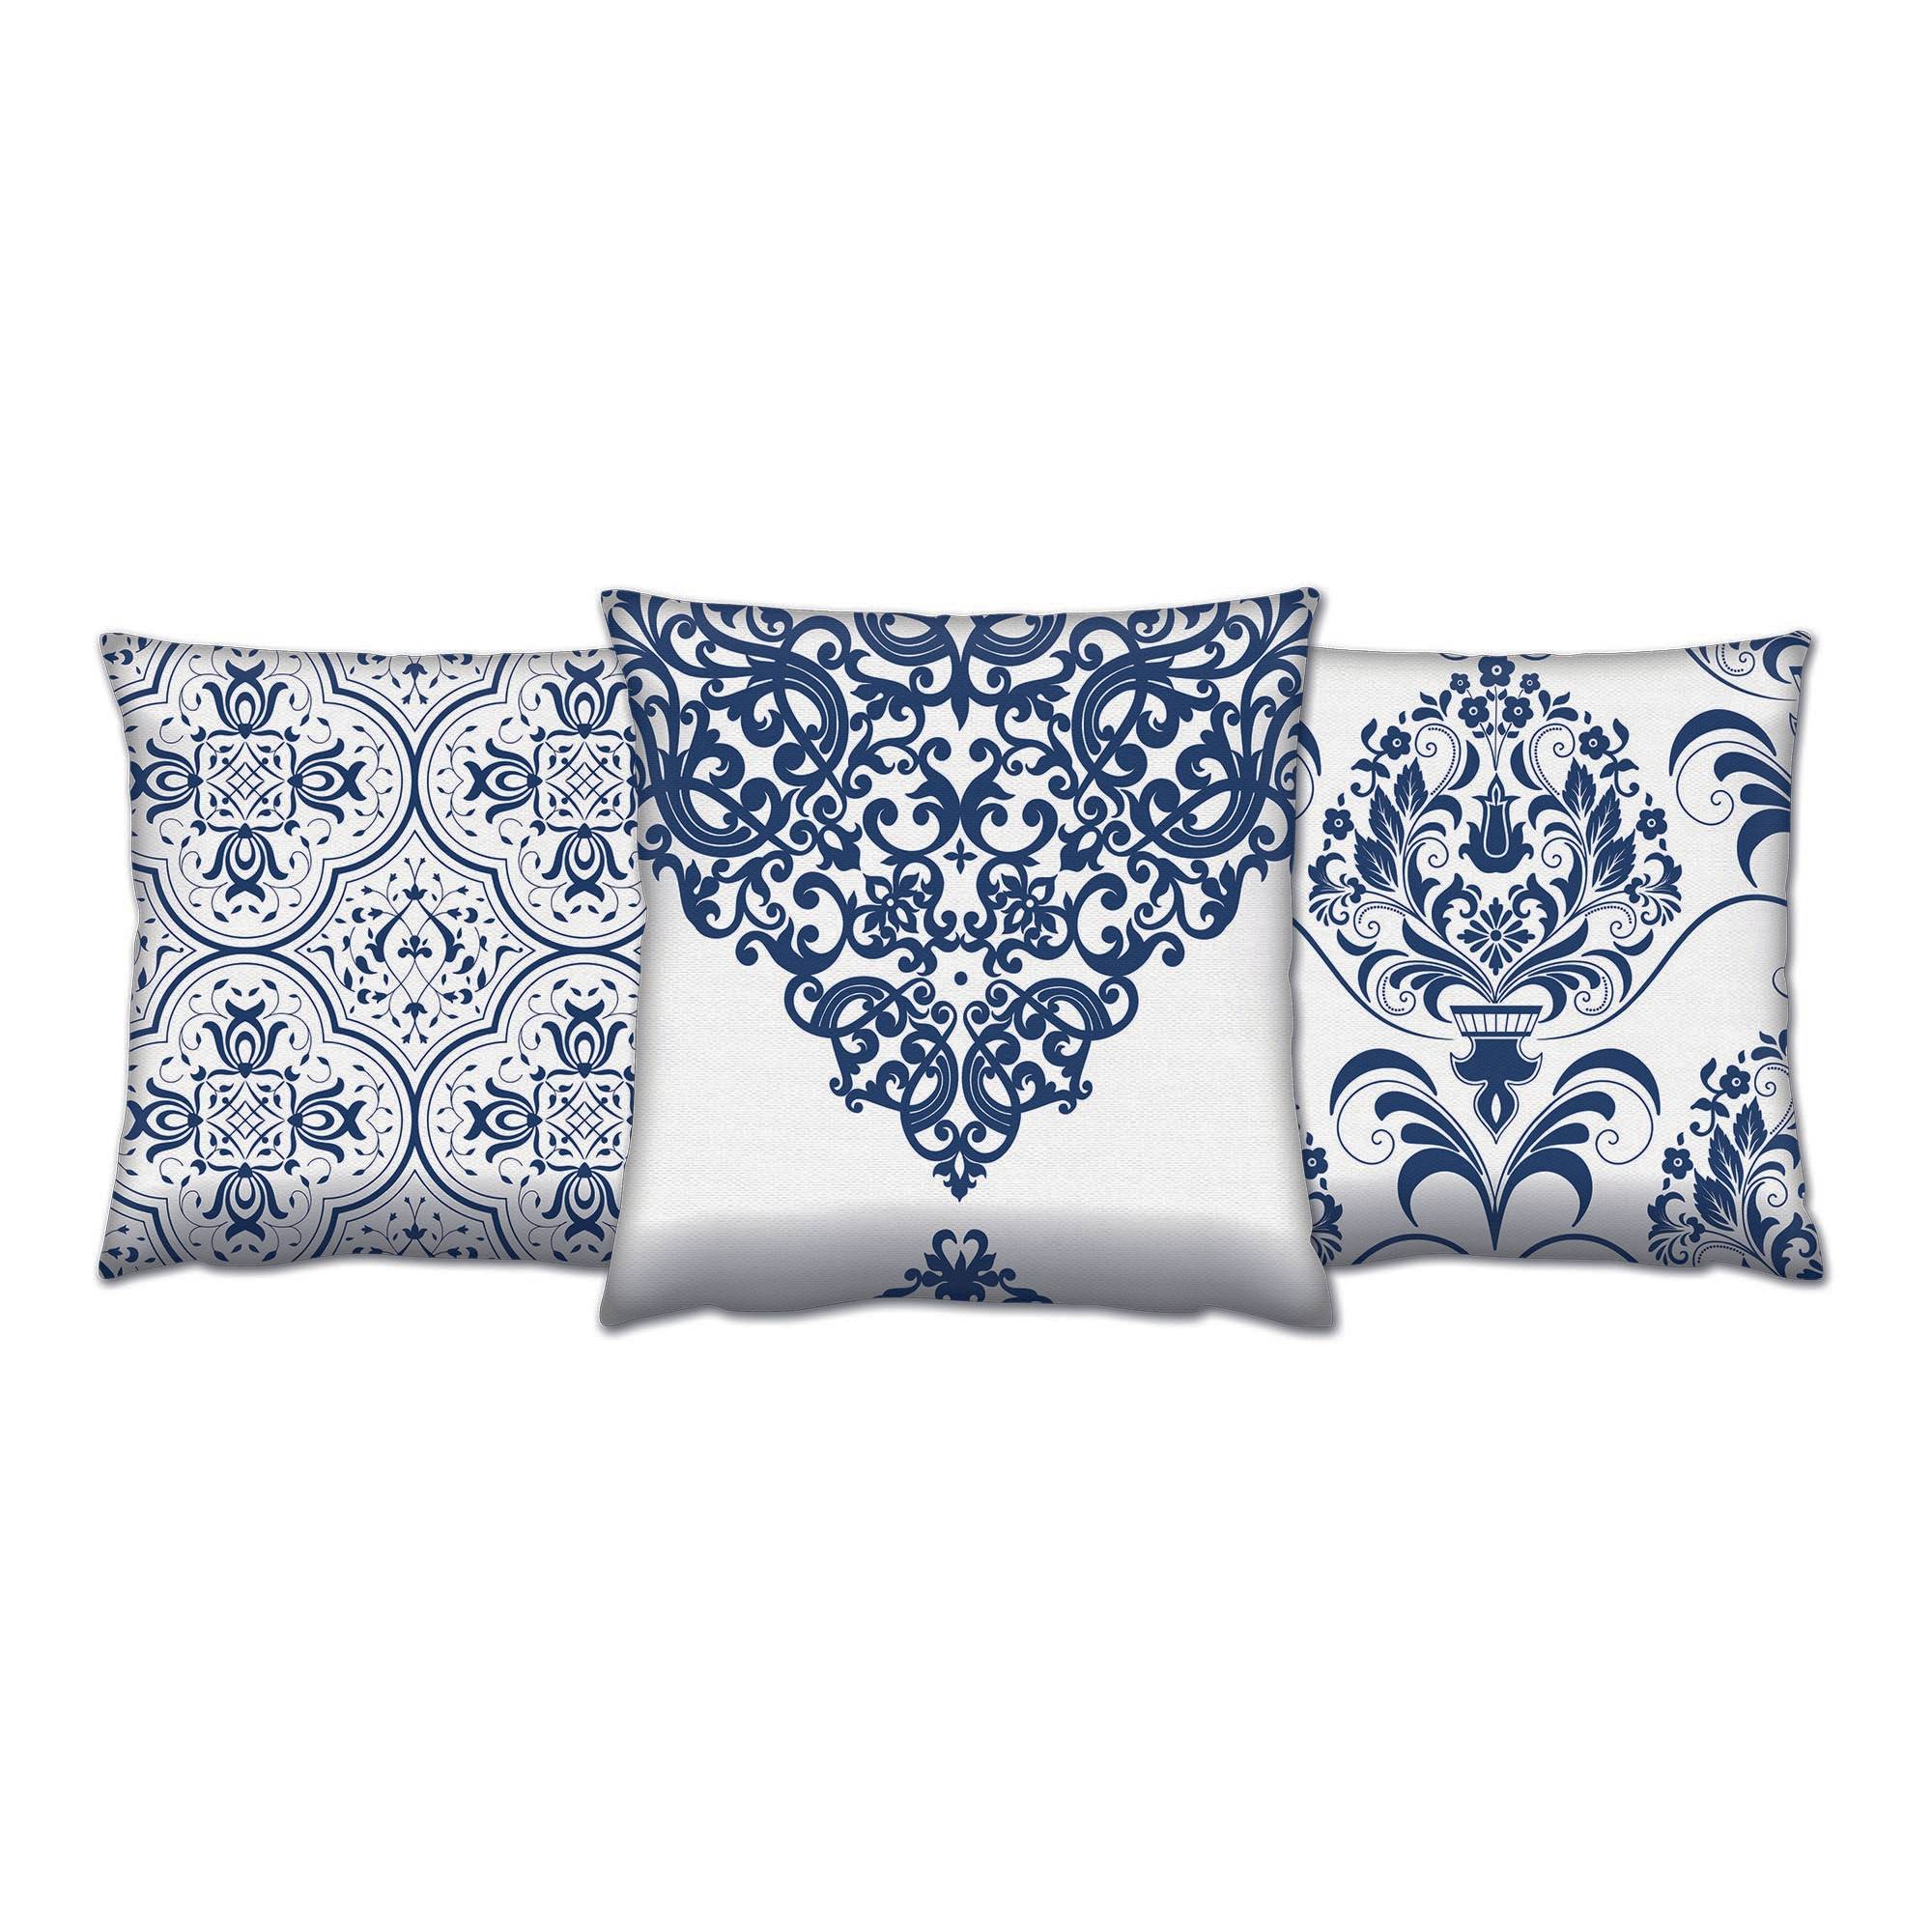 Set de 3 coussins assortis Decorare Baroque chic 43 x 43 cm Coton Polyester Bleu foncé sur Blanc